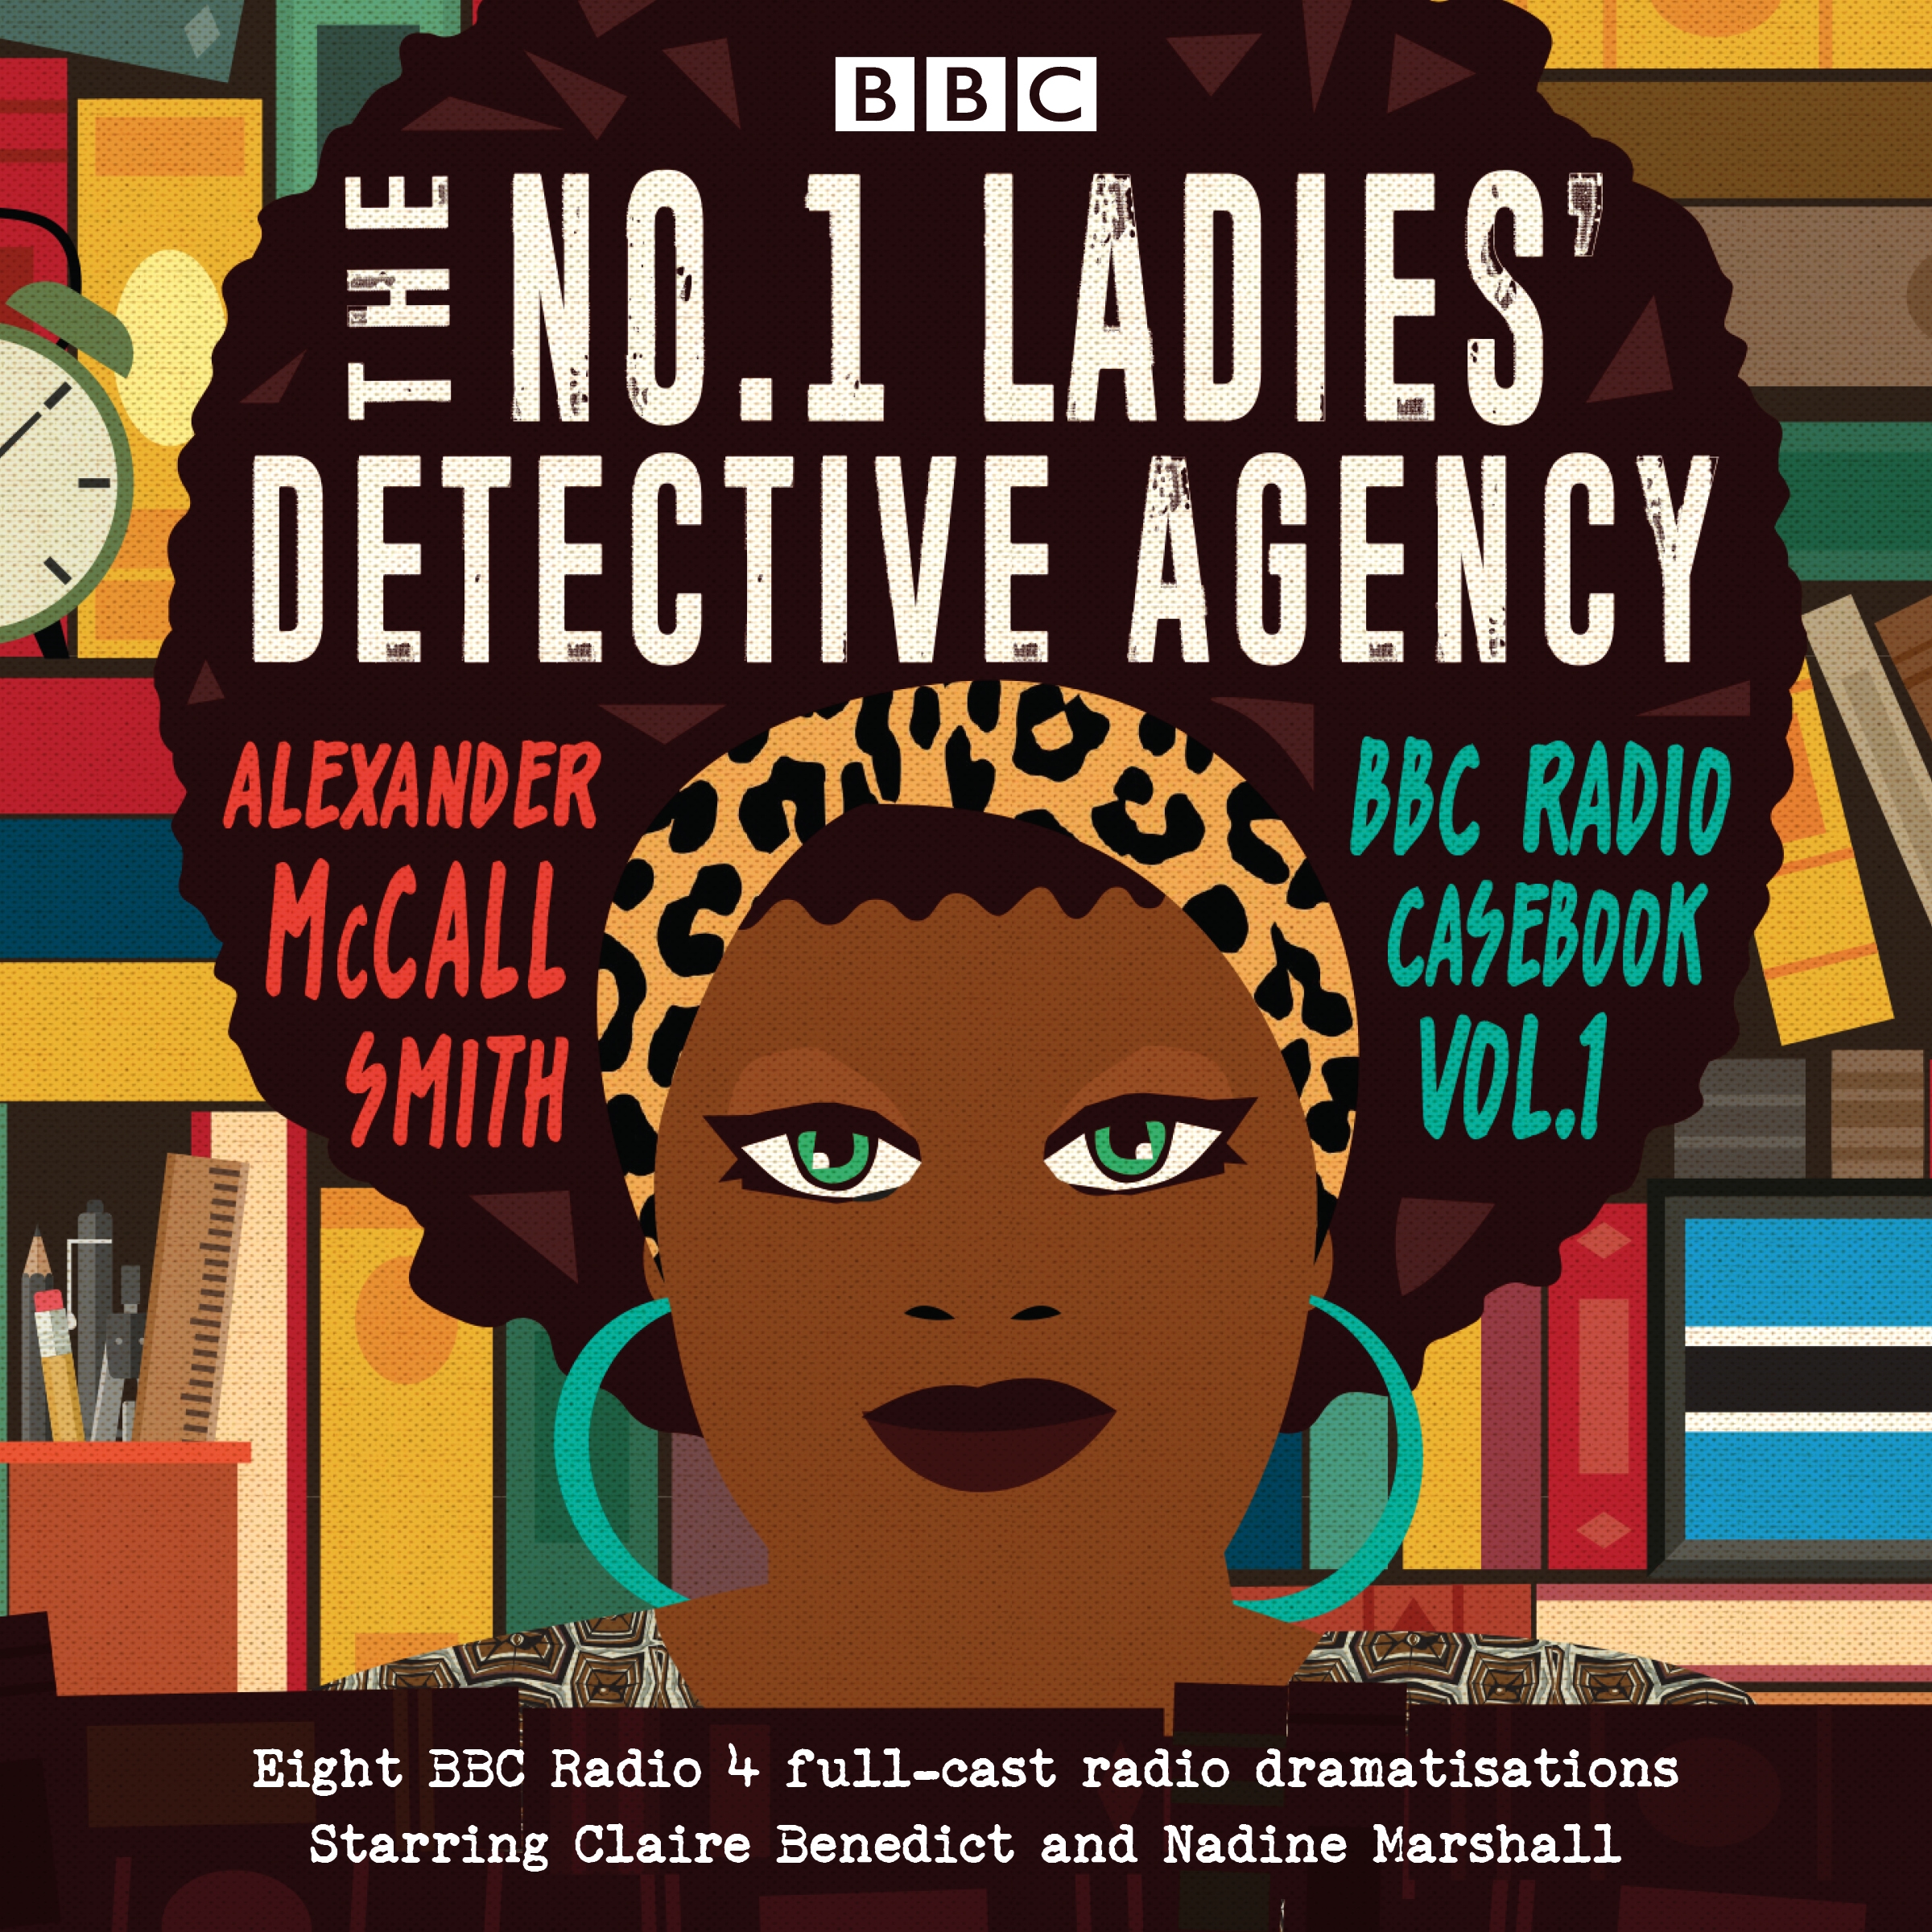 ladies detective agency